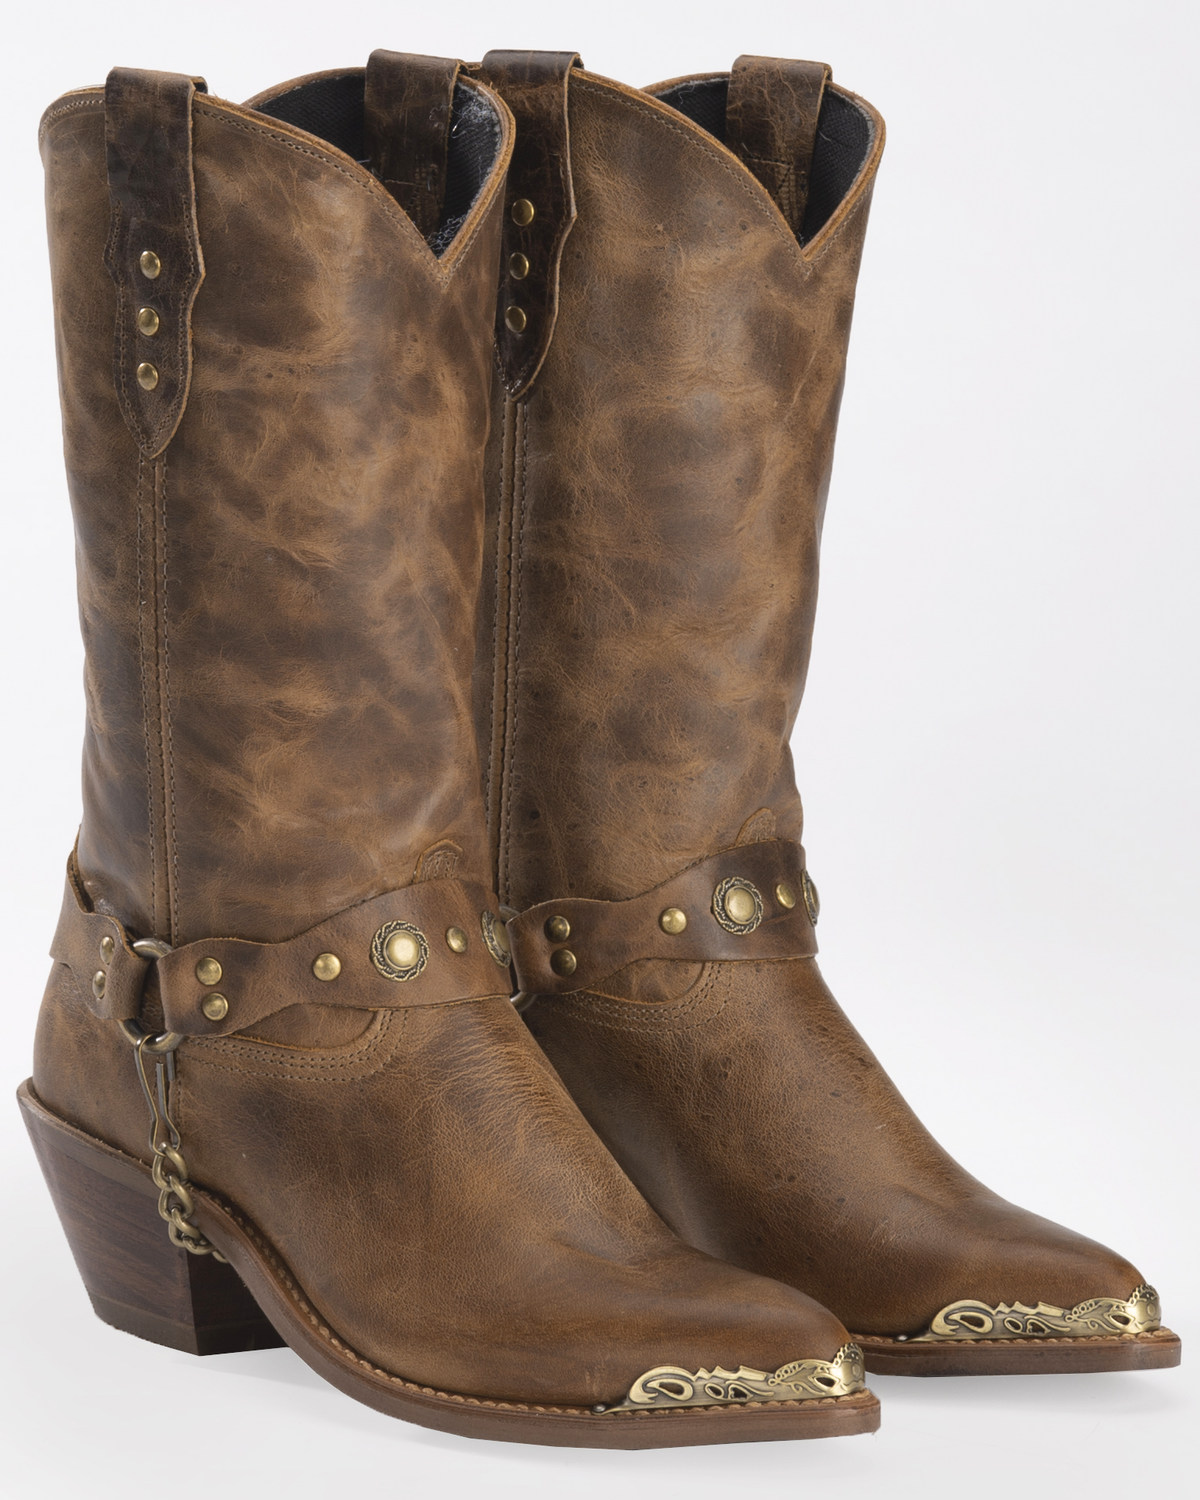 Sage Boots by Abilene Women's 11" Concho Western